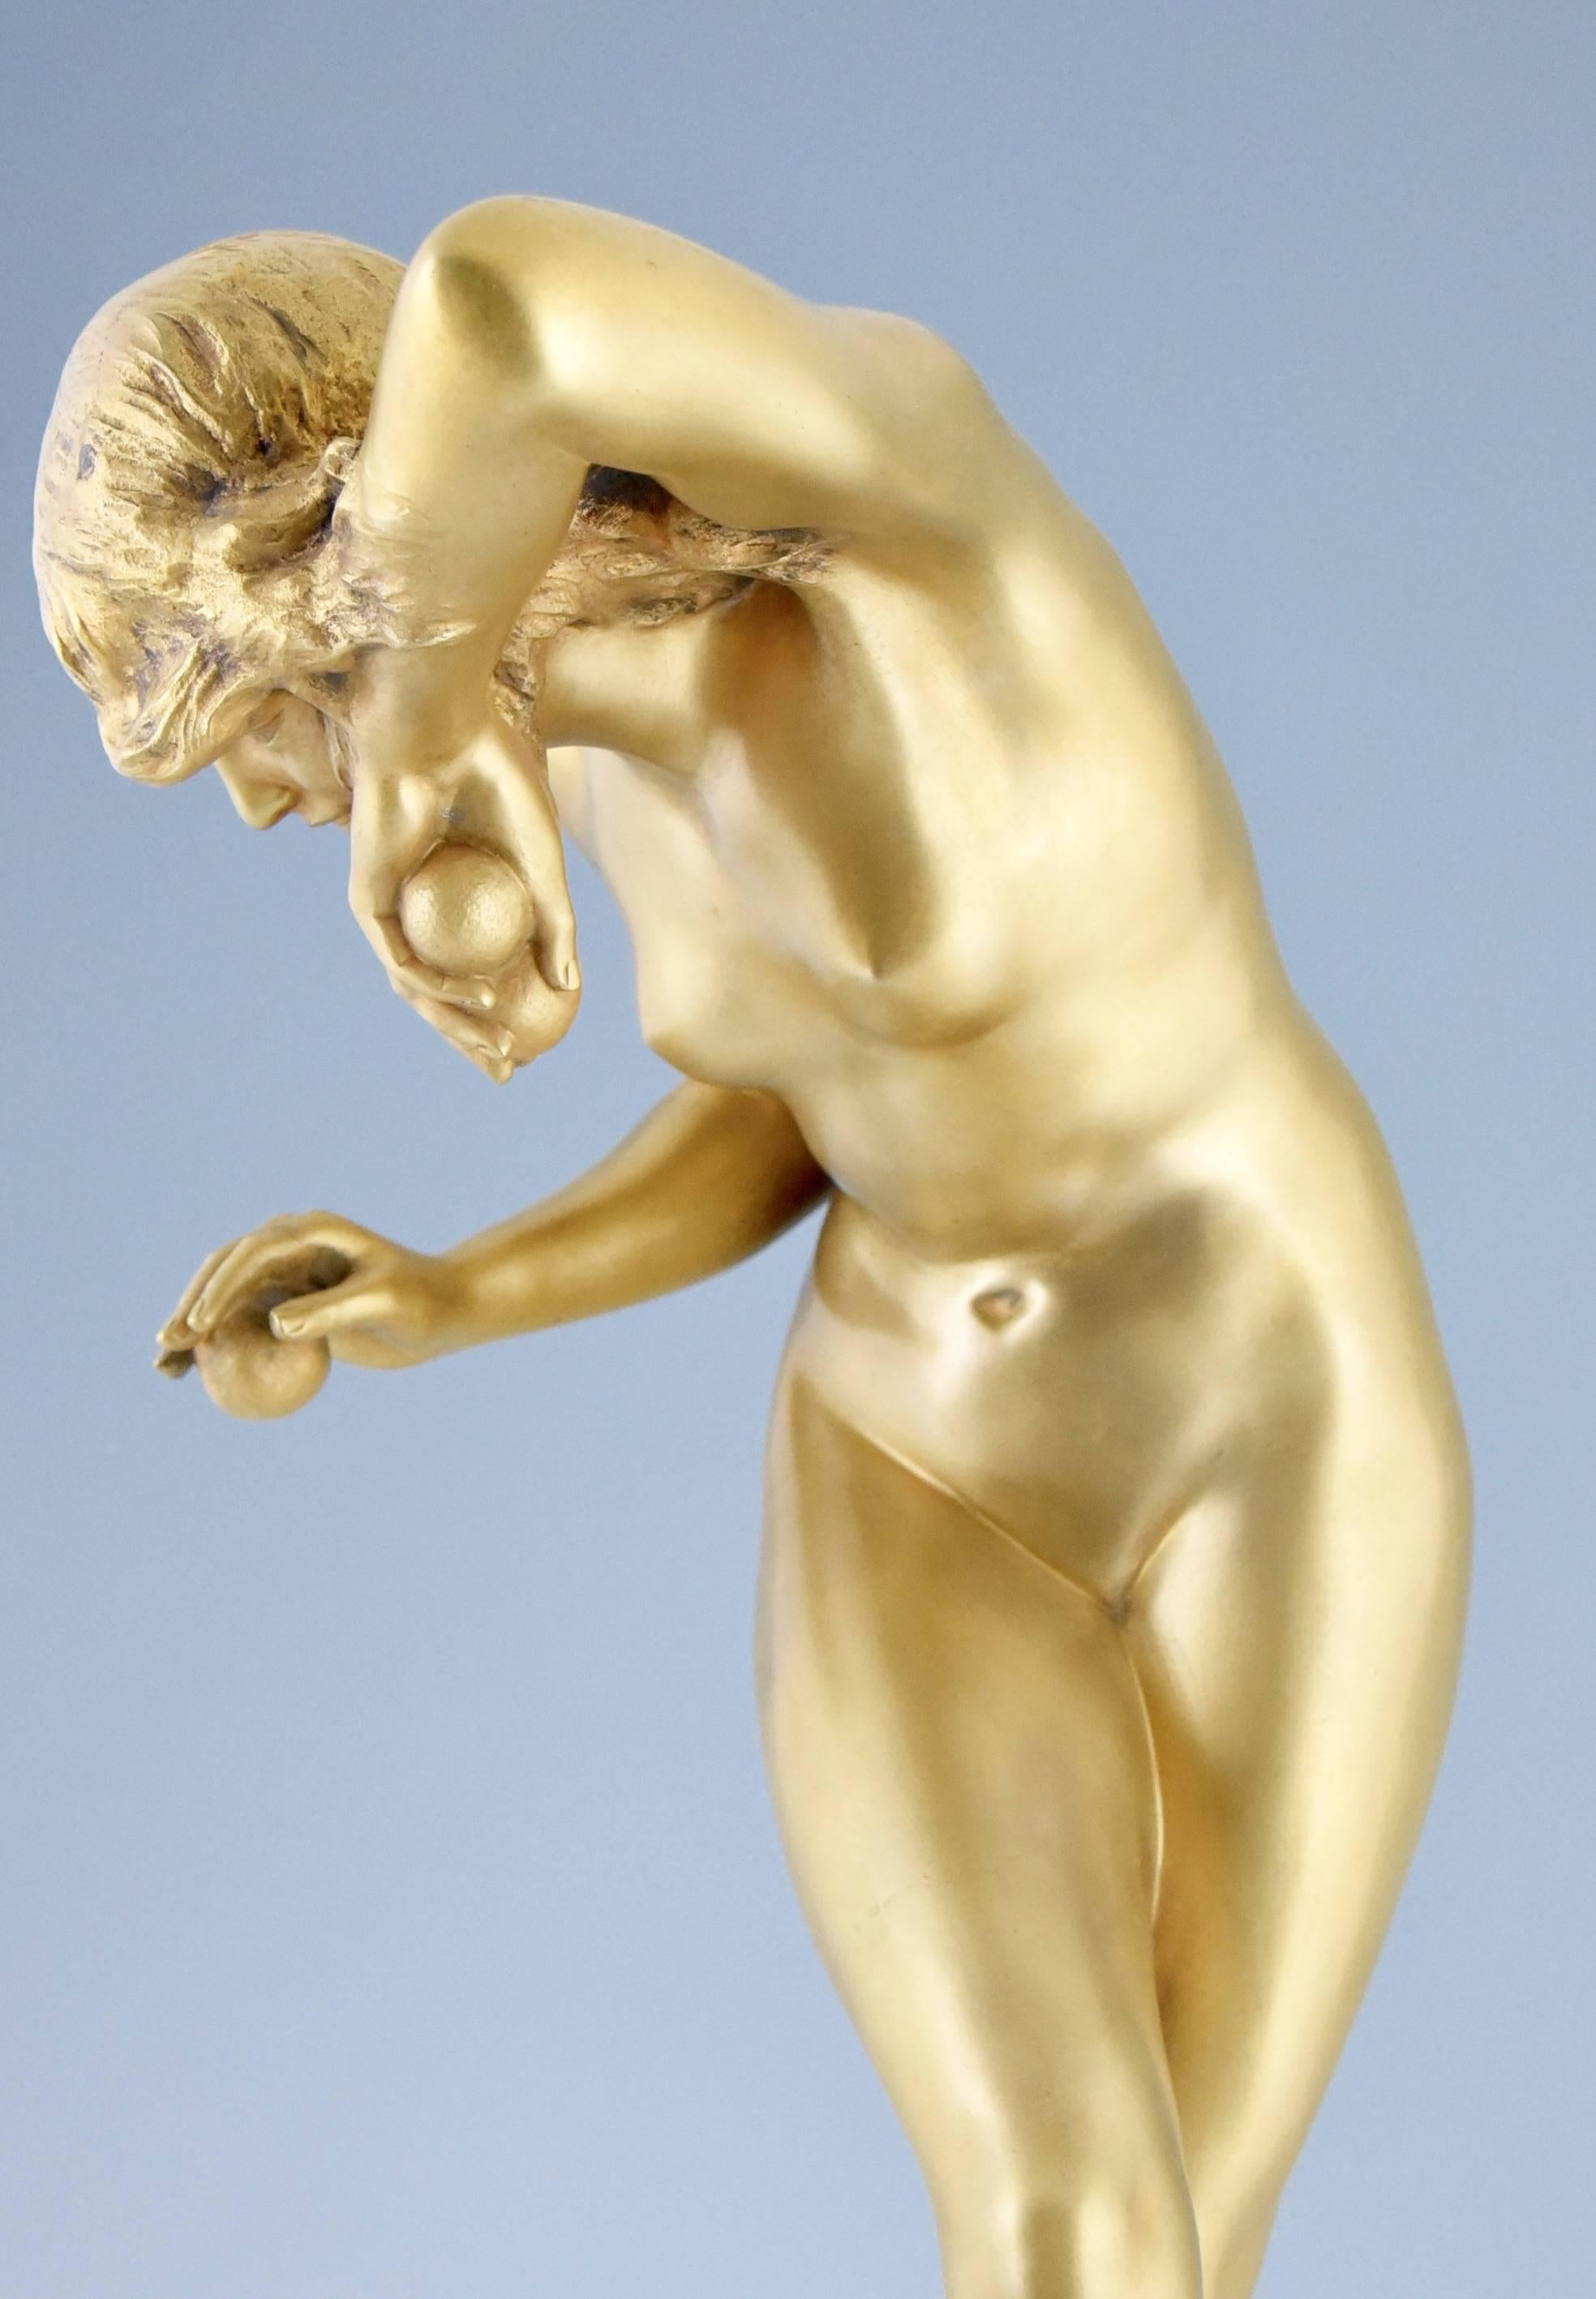 French Art Nouveau bronze sculpture nude dancer by Louis Marie Jules Delapchier 1